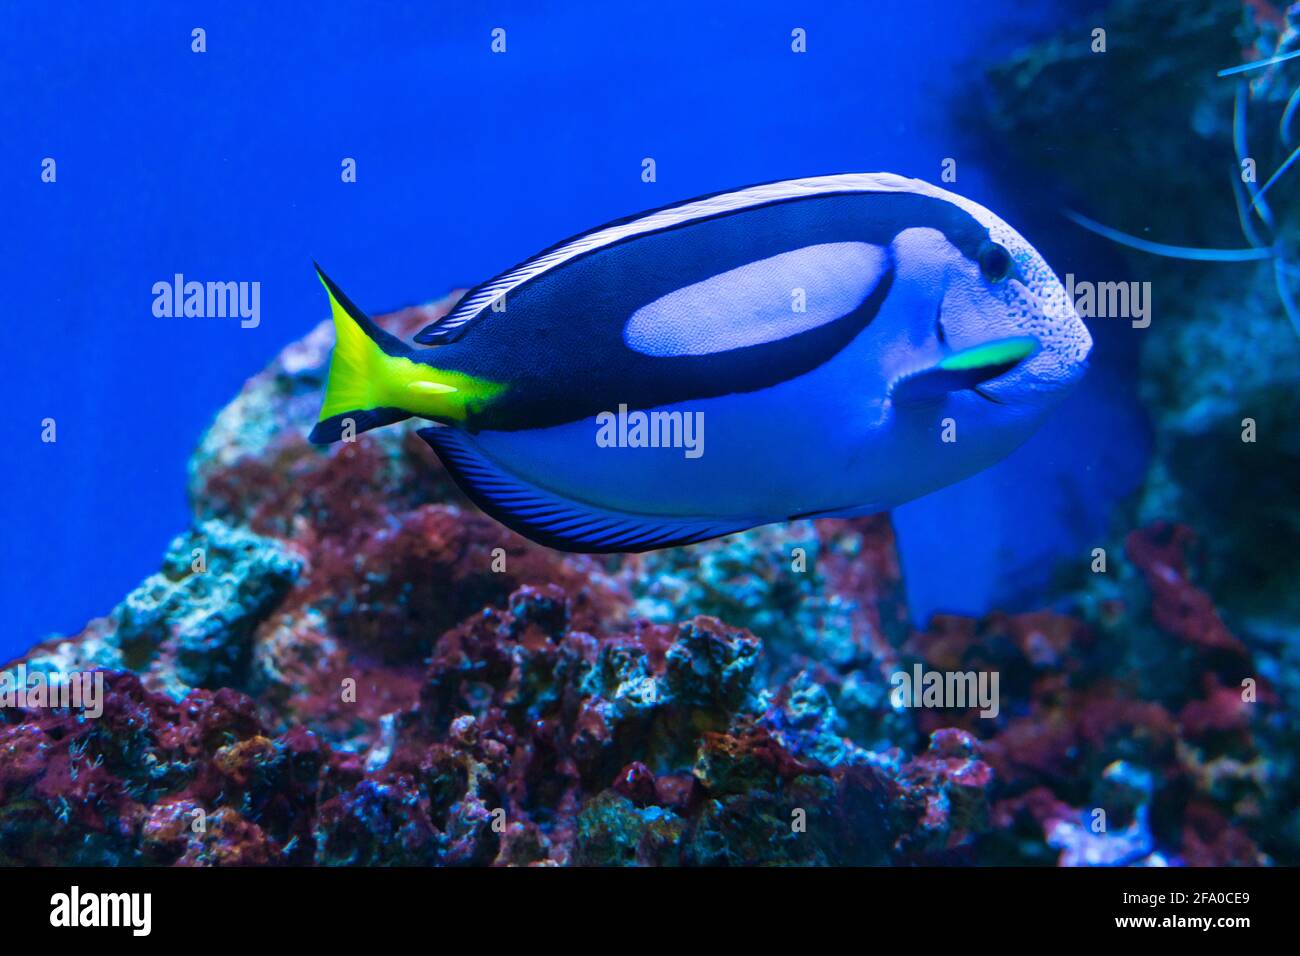 Blue tang Surgeonfish close-up, beliebtes tropisches Aquarium Haustier und rotes Meer, exotische Fische aus dem pazifik Stockfoto